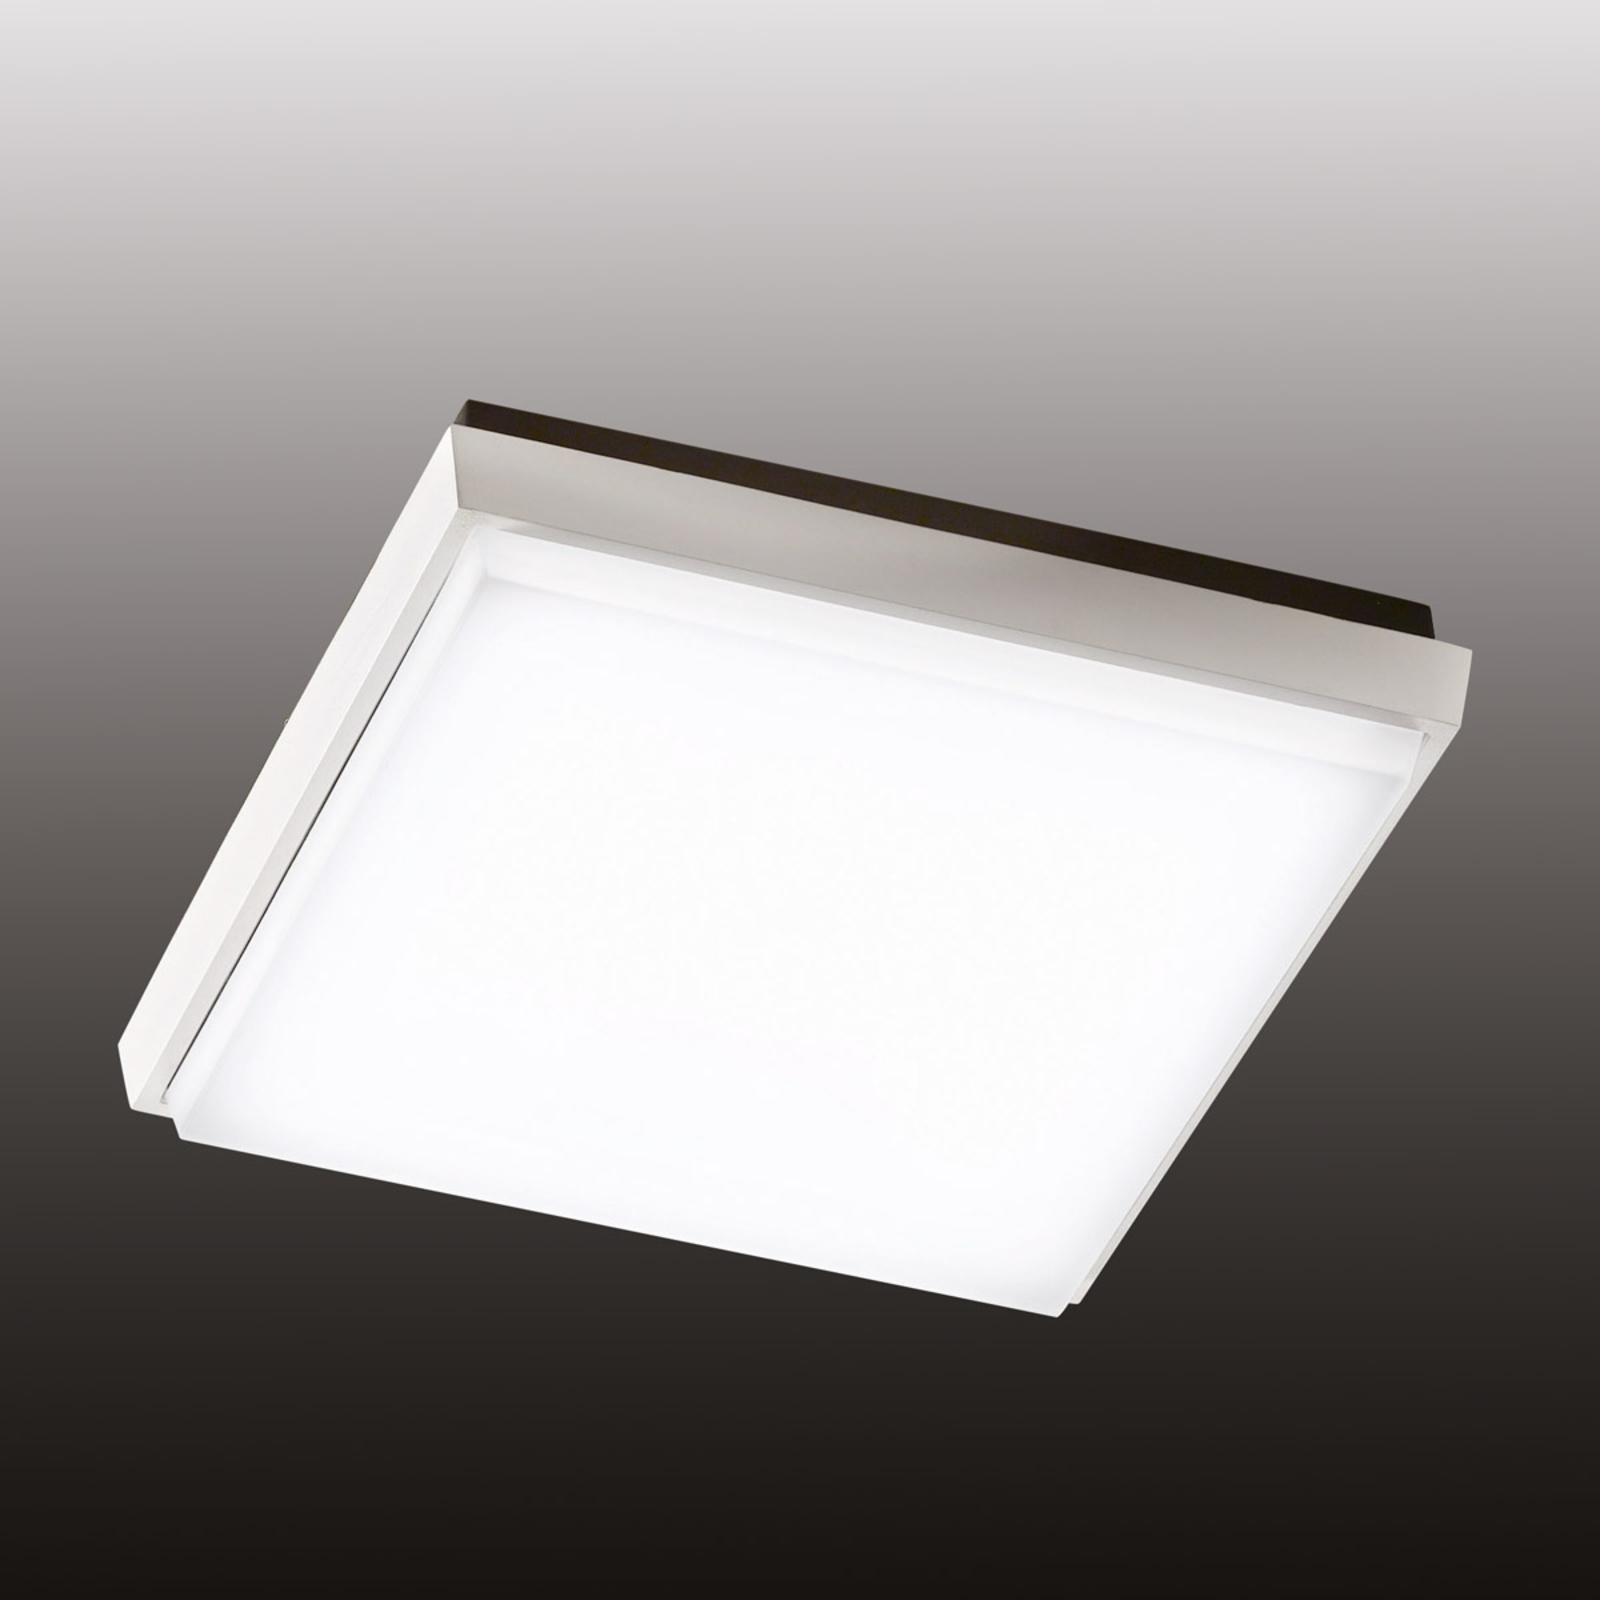 Lampa sufitowa zewnętrzna LED Desdy, 24x24cm biała